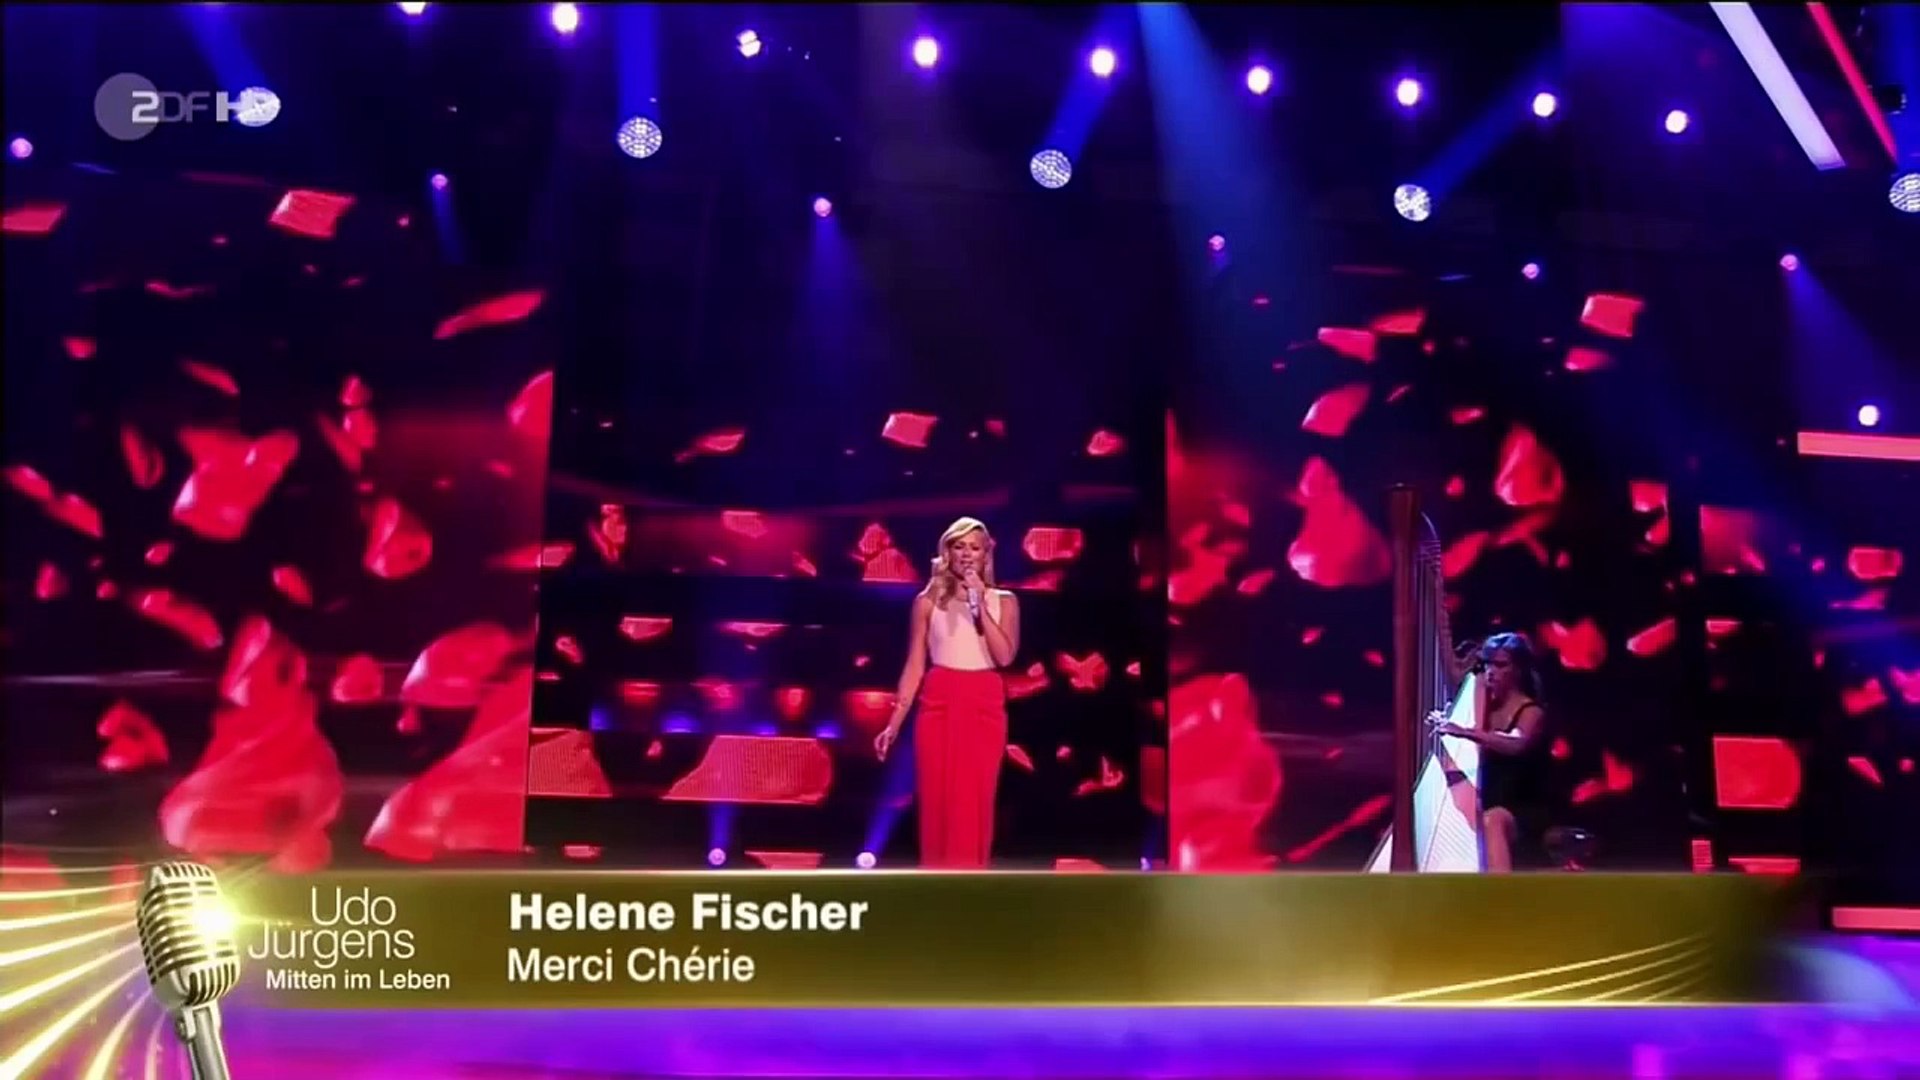 Helene Fischer Merci Chérie Cover für Udo Jürgens zum 80 Geburtstag Sh -  Dailymotion Video